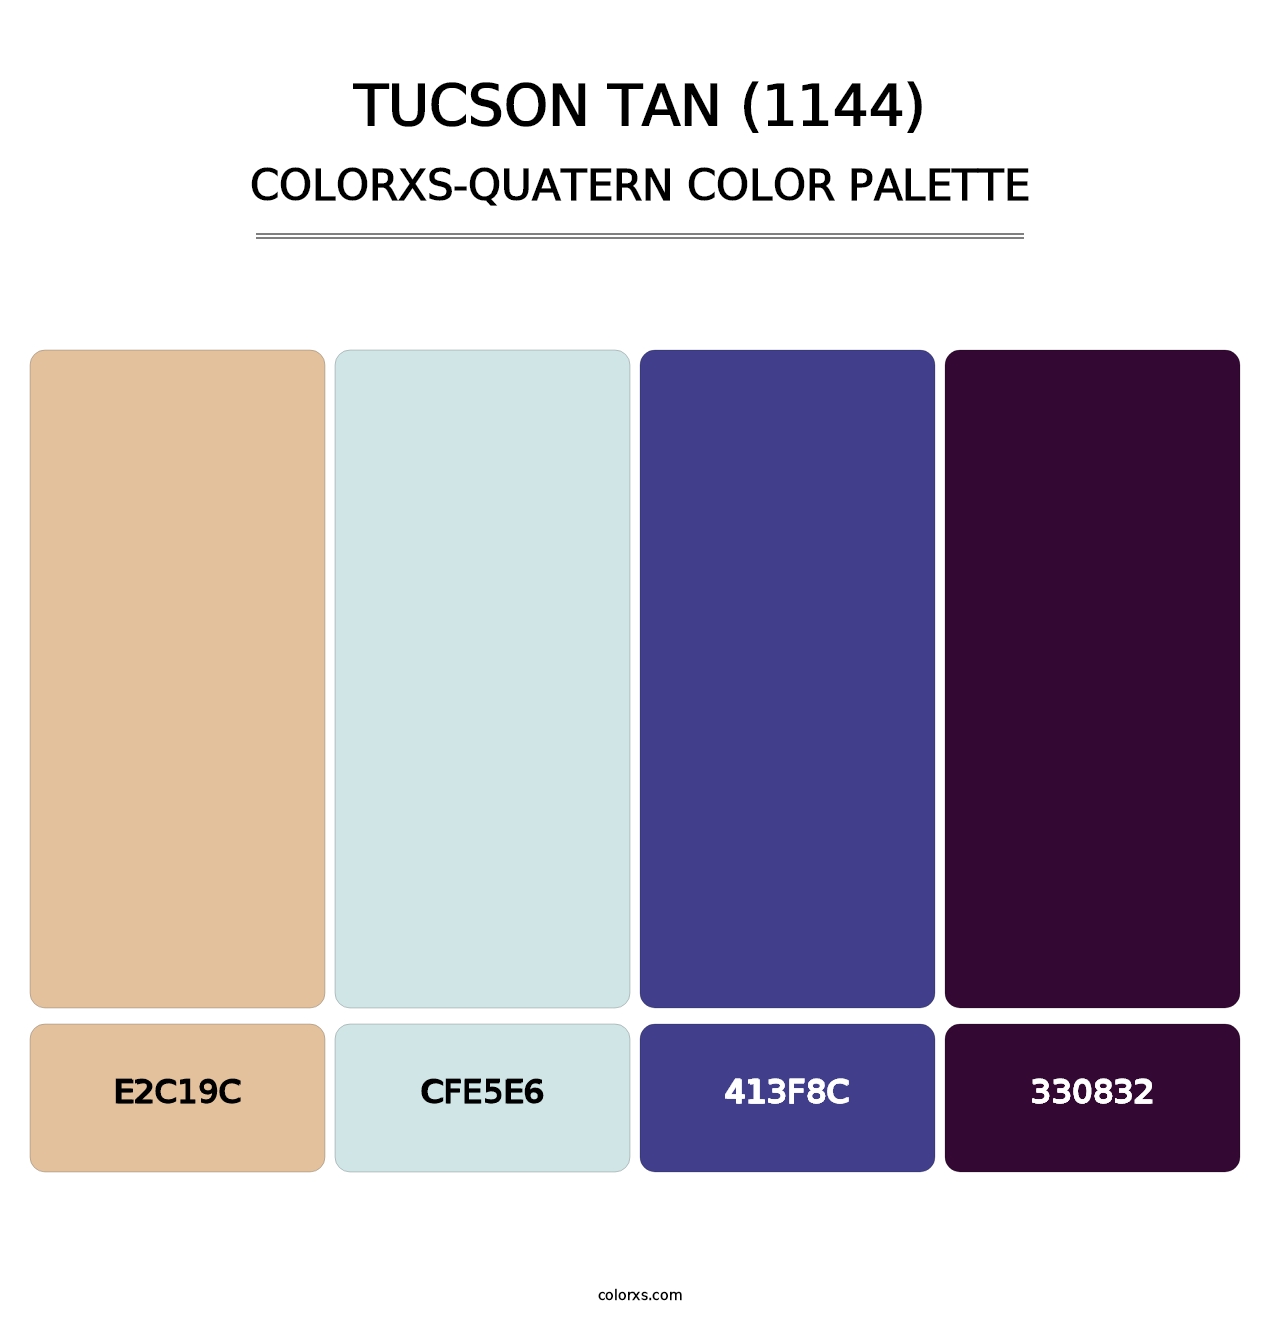 Tucson Tan (1144) - Colorxs Quatern Palette